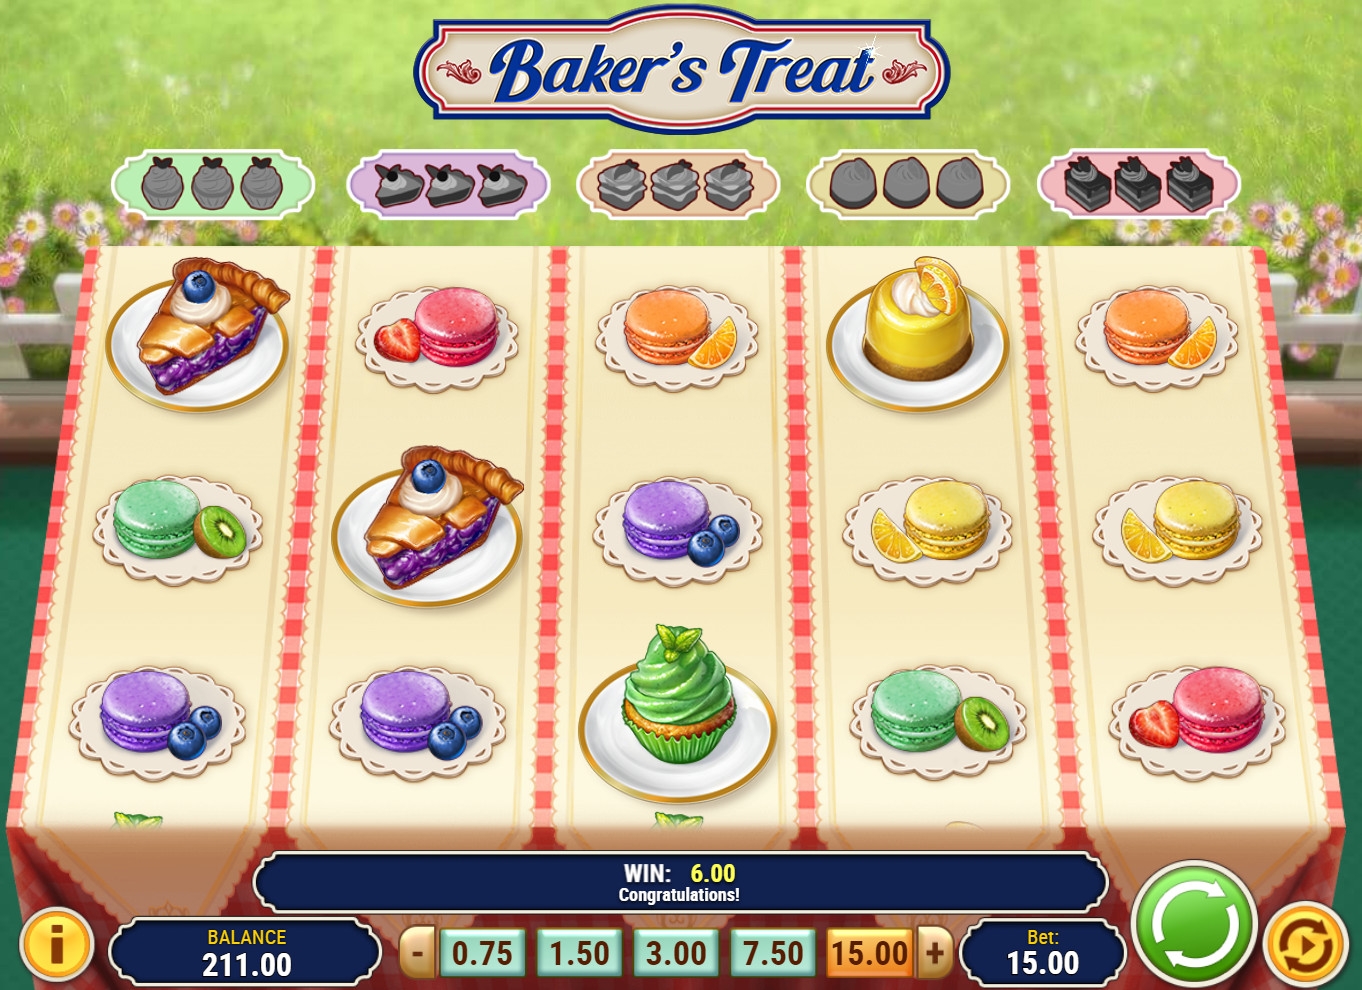 Baker’s Treat (Baker’s Treat) from category Slots